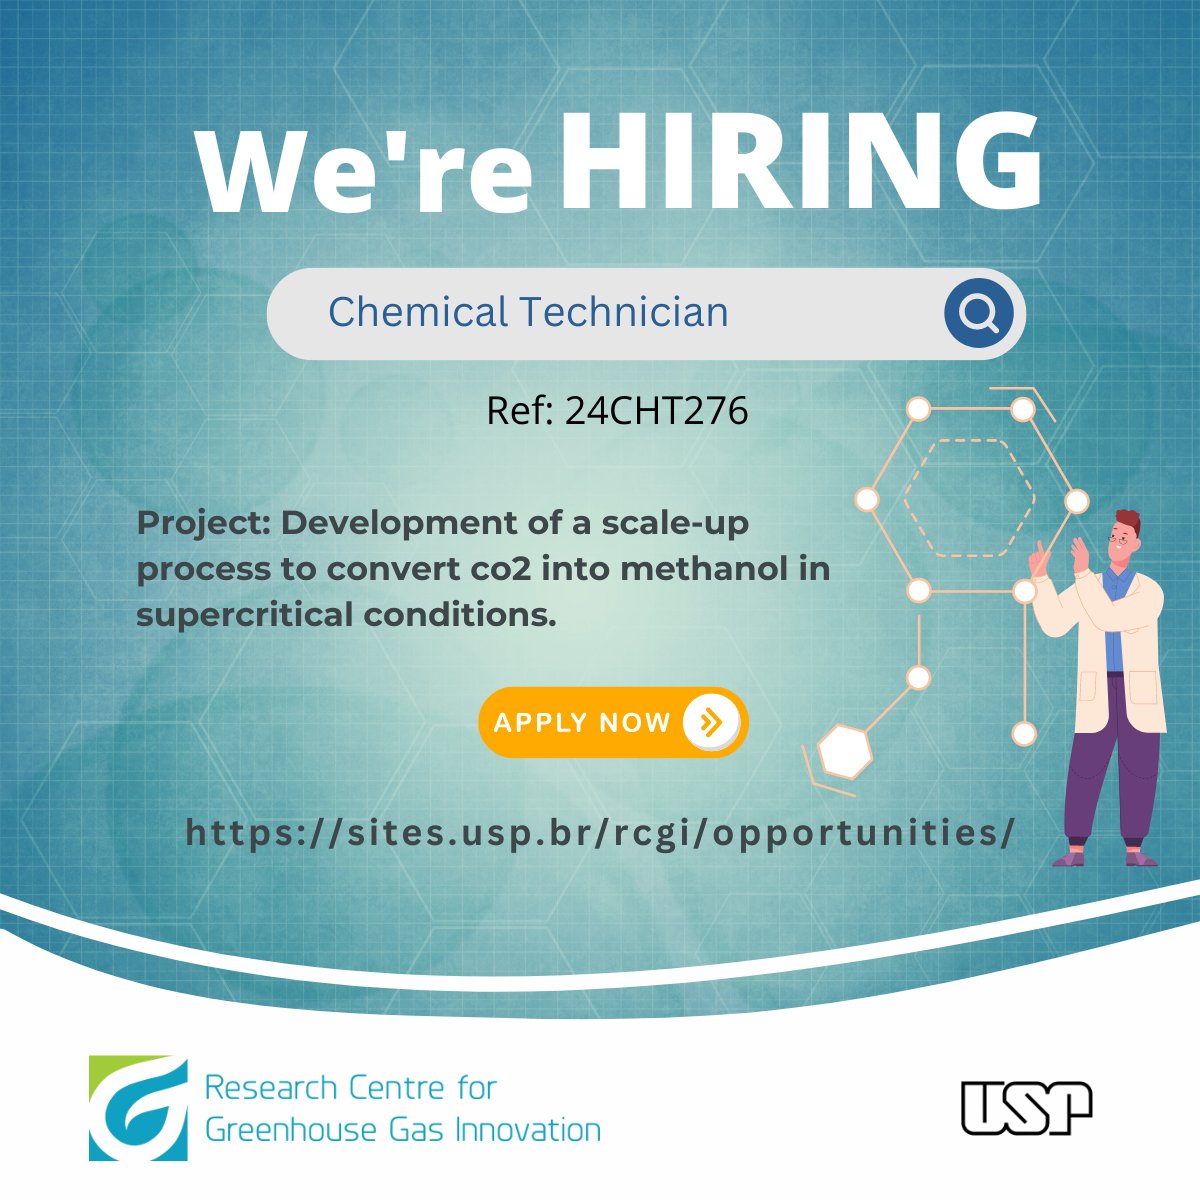 Oportunidade CLT no RCGI – USP! Buscamos um técnico químico para o programa CCU do RCGI – USP! Mais informações: sites.usp.br/rcgi/opportuni… #RCGI #USP #oportunidades